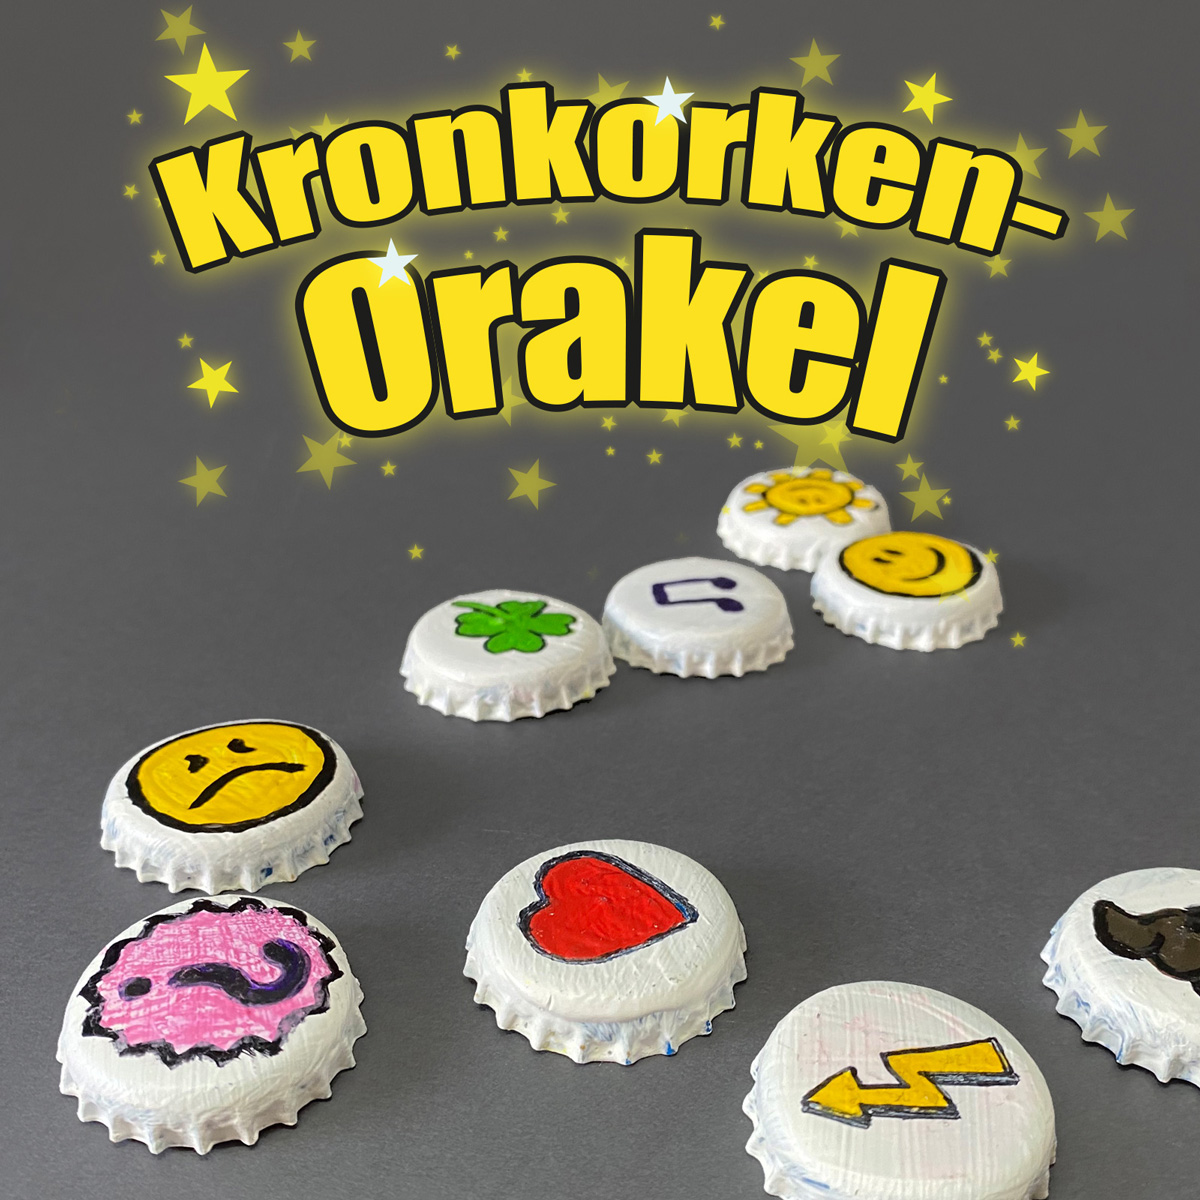 Bastelidee Kronkorken-Orakel: Bastelt aus Kronkorken ein Orakel-Spiel für kleine Weissagungen!